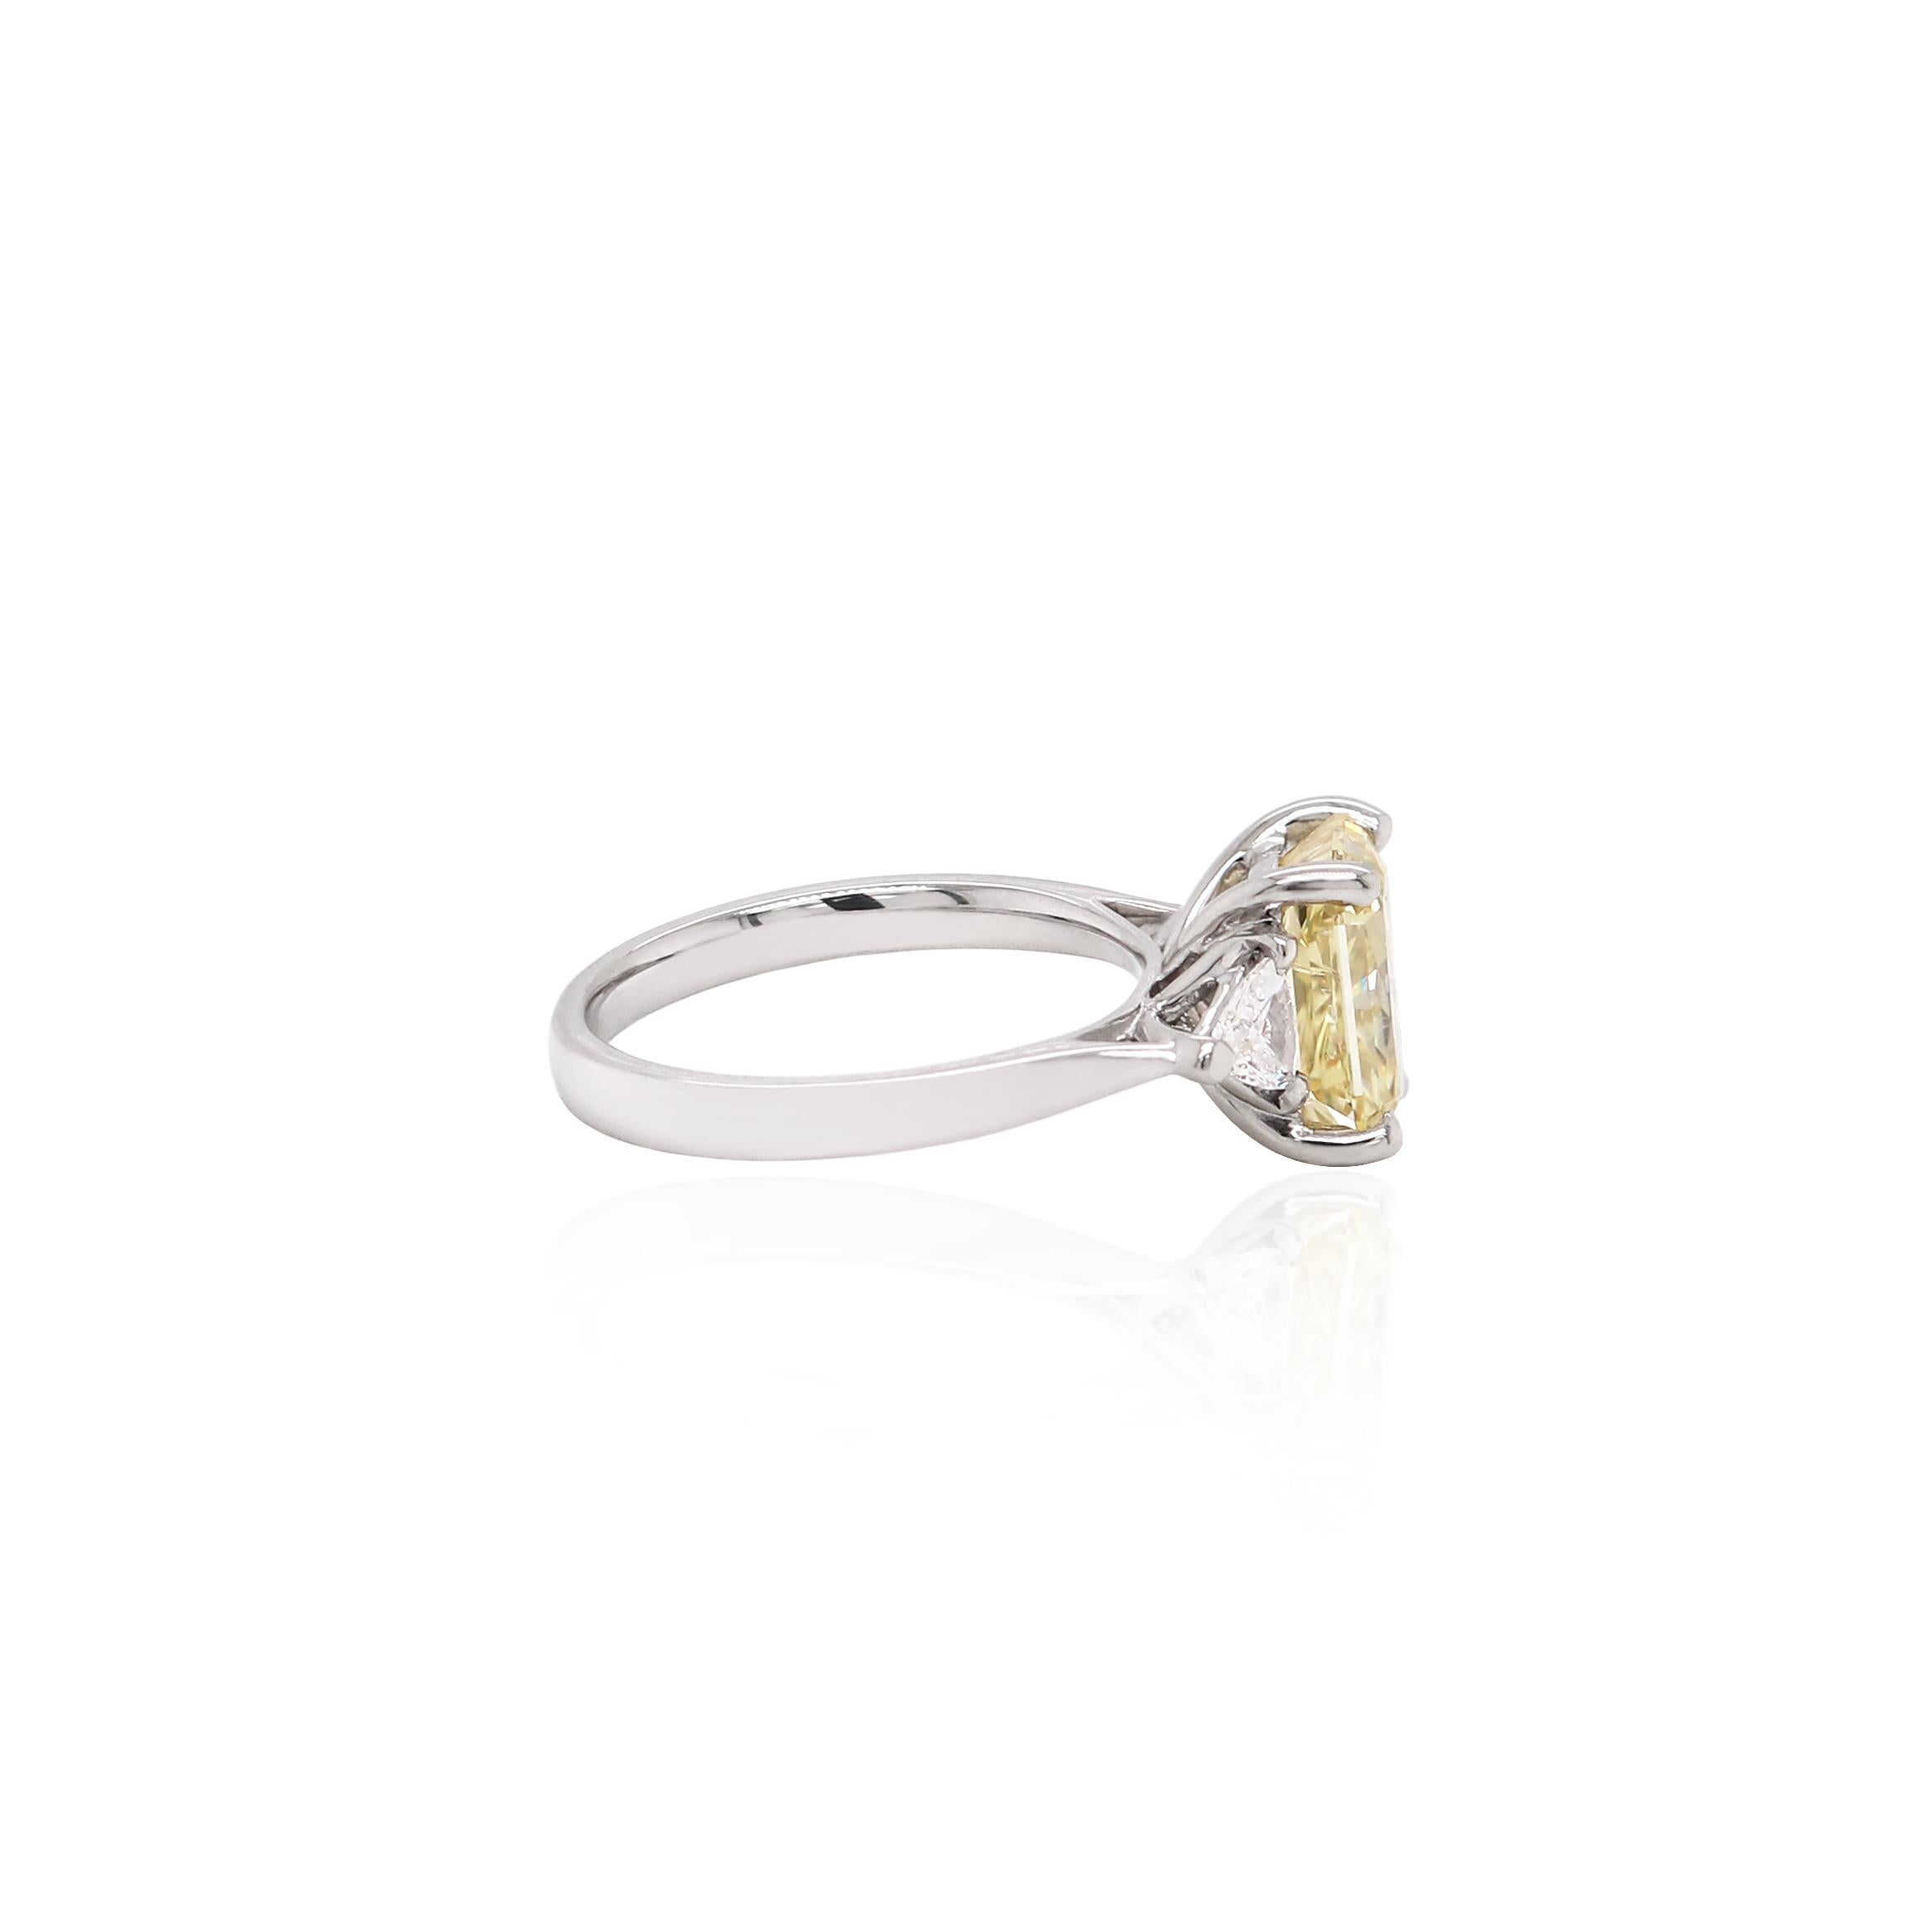 Dieser exquisite Verlobungsring ist mit einem zertifizierten, intensiv bräunlich-gelben Diamanten im Strahlenschliff in einer offenen Fassung mit vier Klauen ausgestattet. Dieser wunderschöne Diamant wird von einem Billionen-Diamanten auf beiden